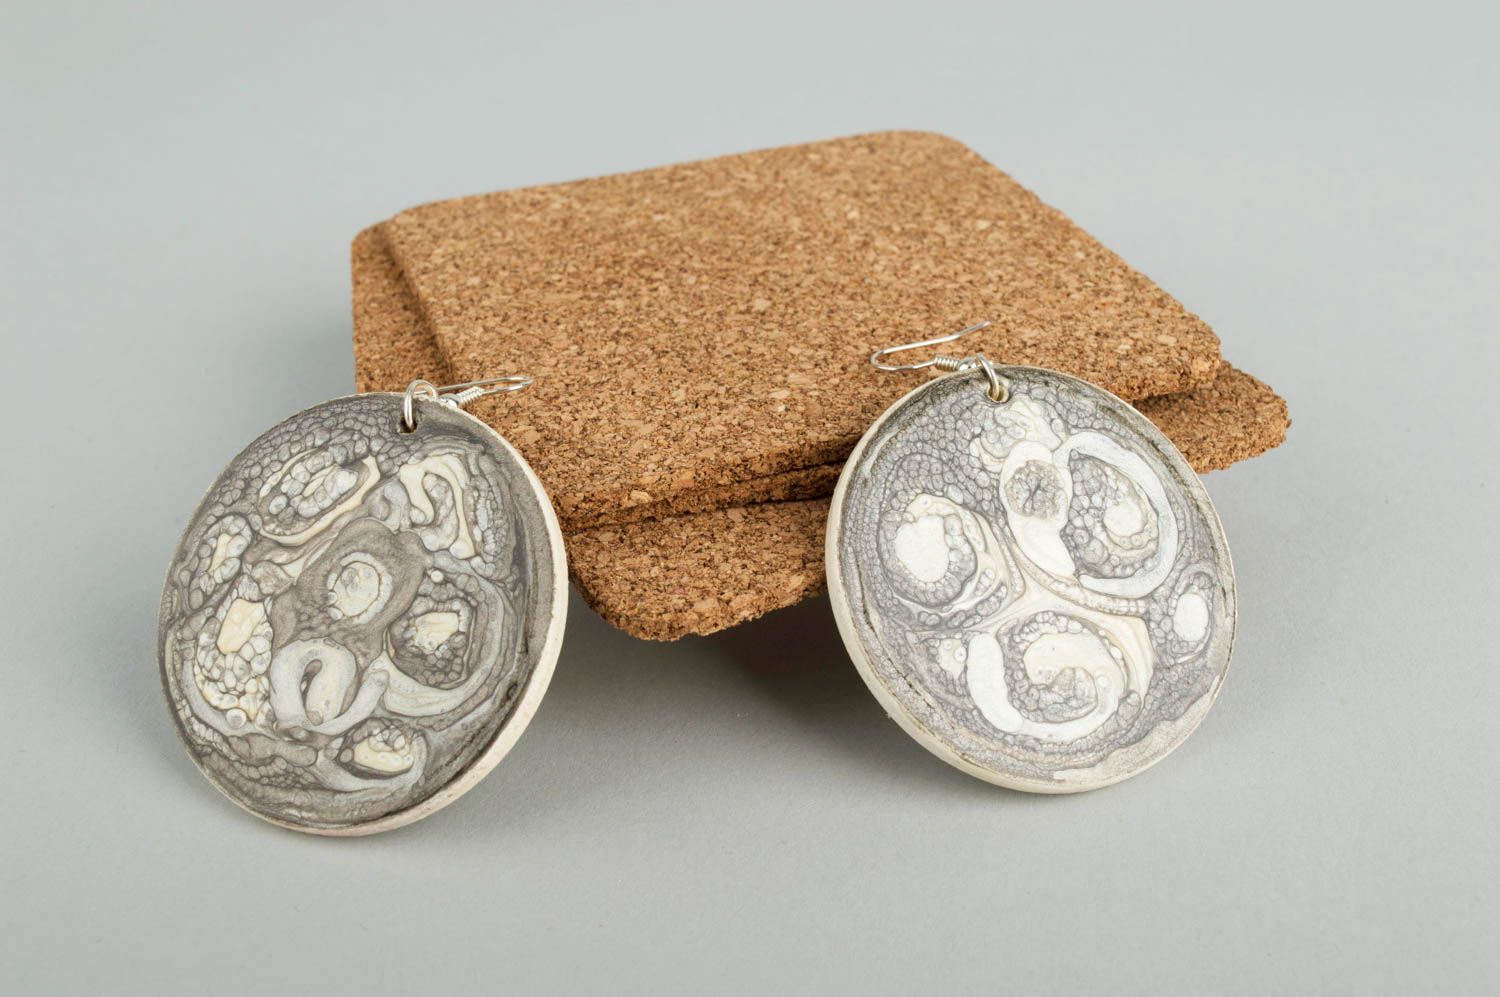 Wooden jewelry earrings for women wooden jewelry unique earrings gifts for women photo 1